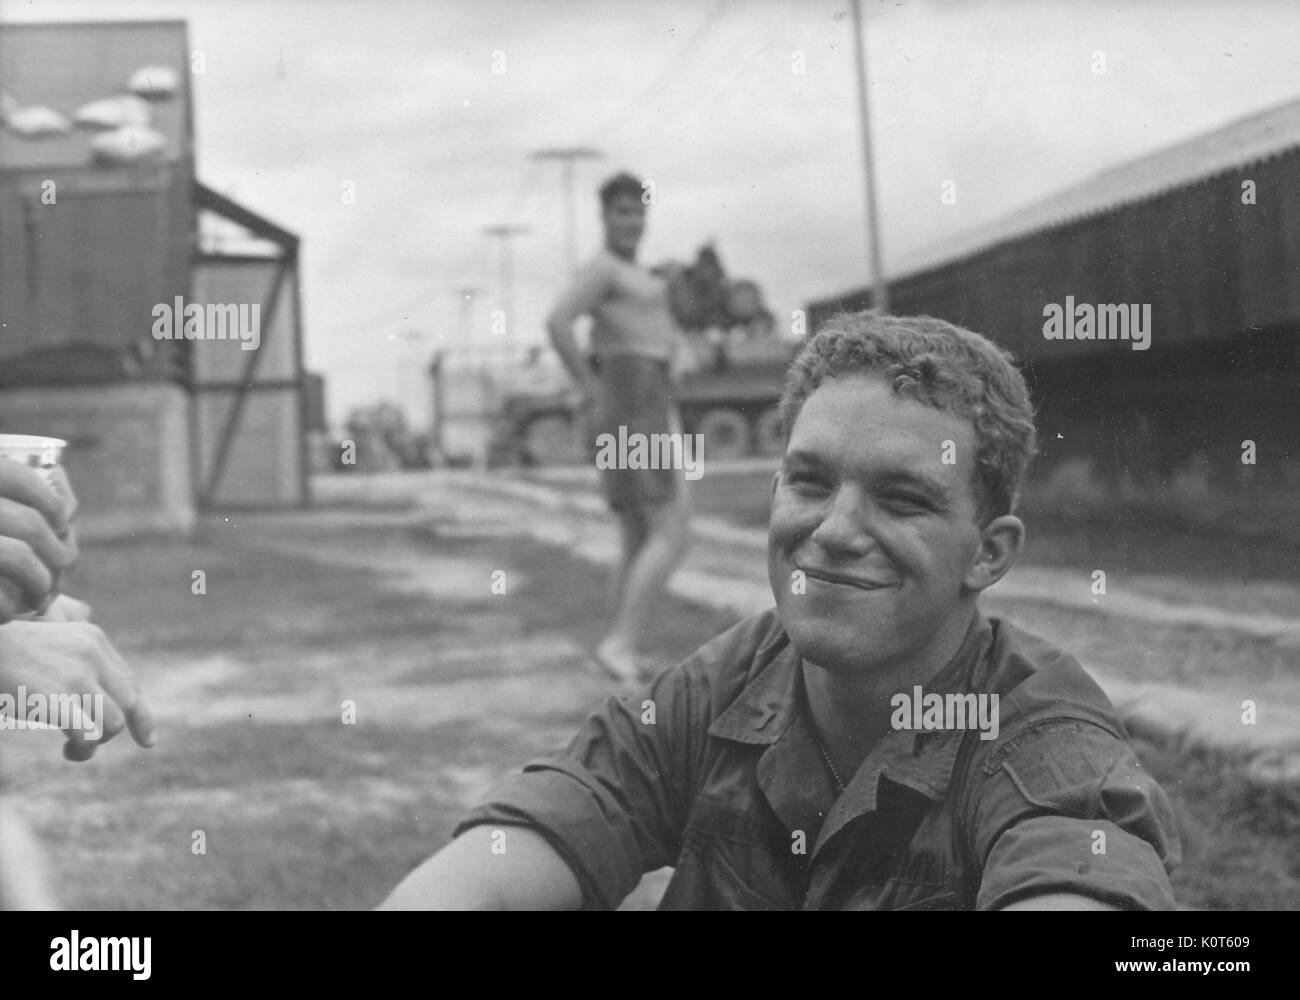 Un soldat de l'armée des États-Unis en souriant alors qu'il est assis sur le sol, un soldat vêtu d'une serviette dans l'arrière-plan s'efforce d'obtenir l'attention du photographe par substitution, la pose d'une pin-up, Vietnam, 1967. Banque D'Images